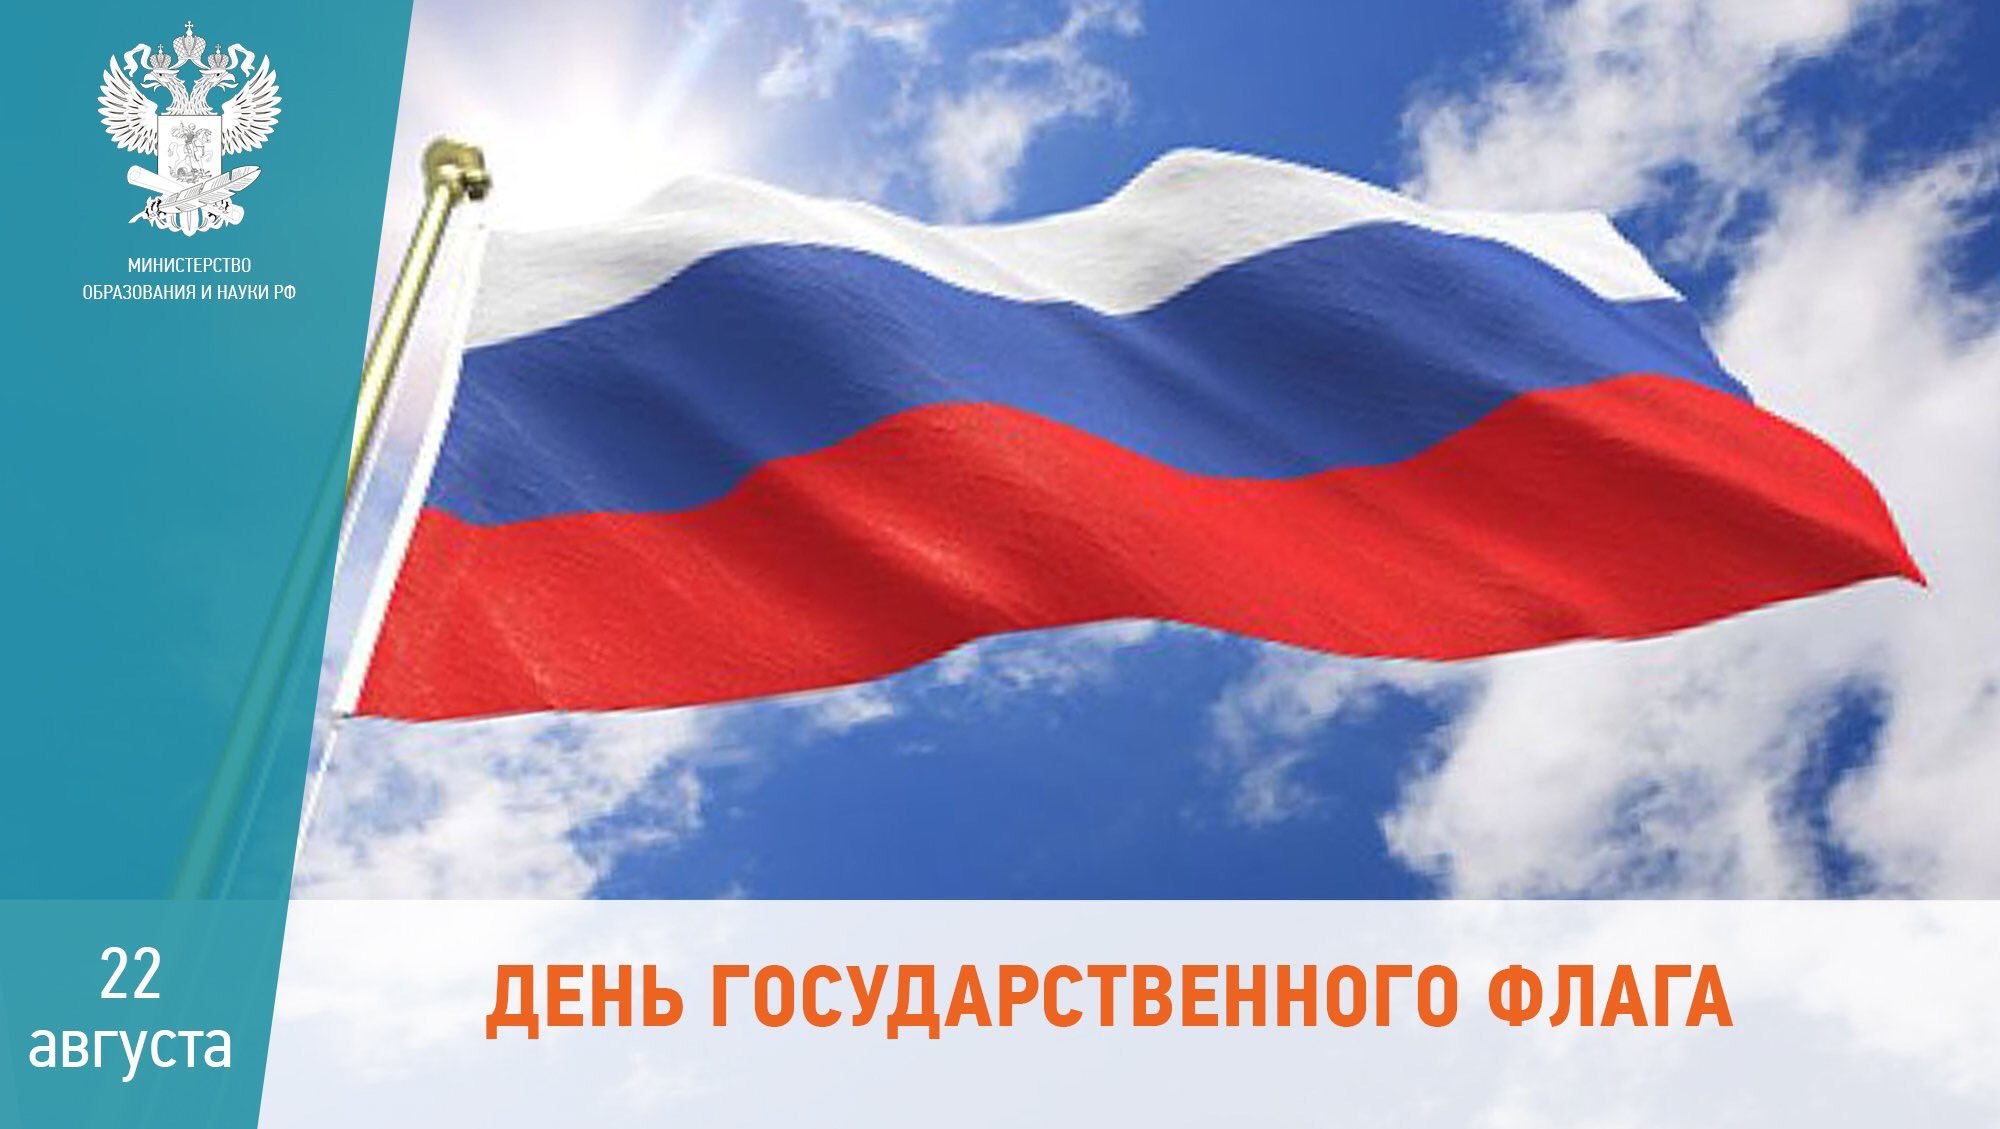 22 Августа день российского флага